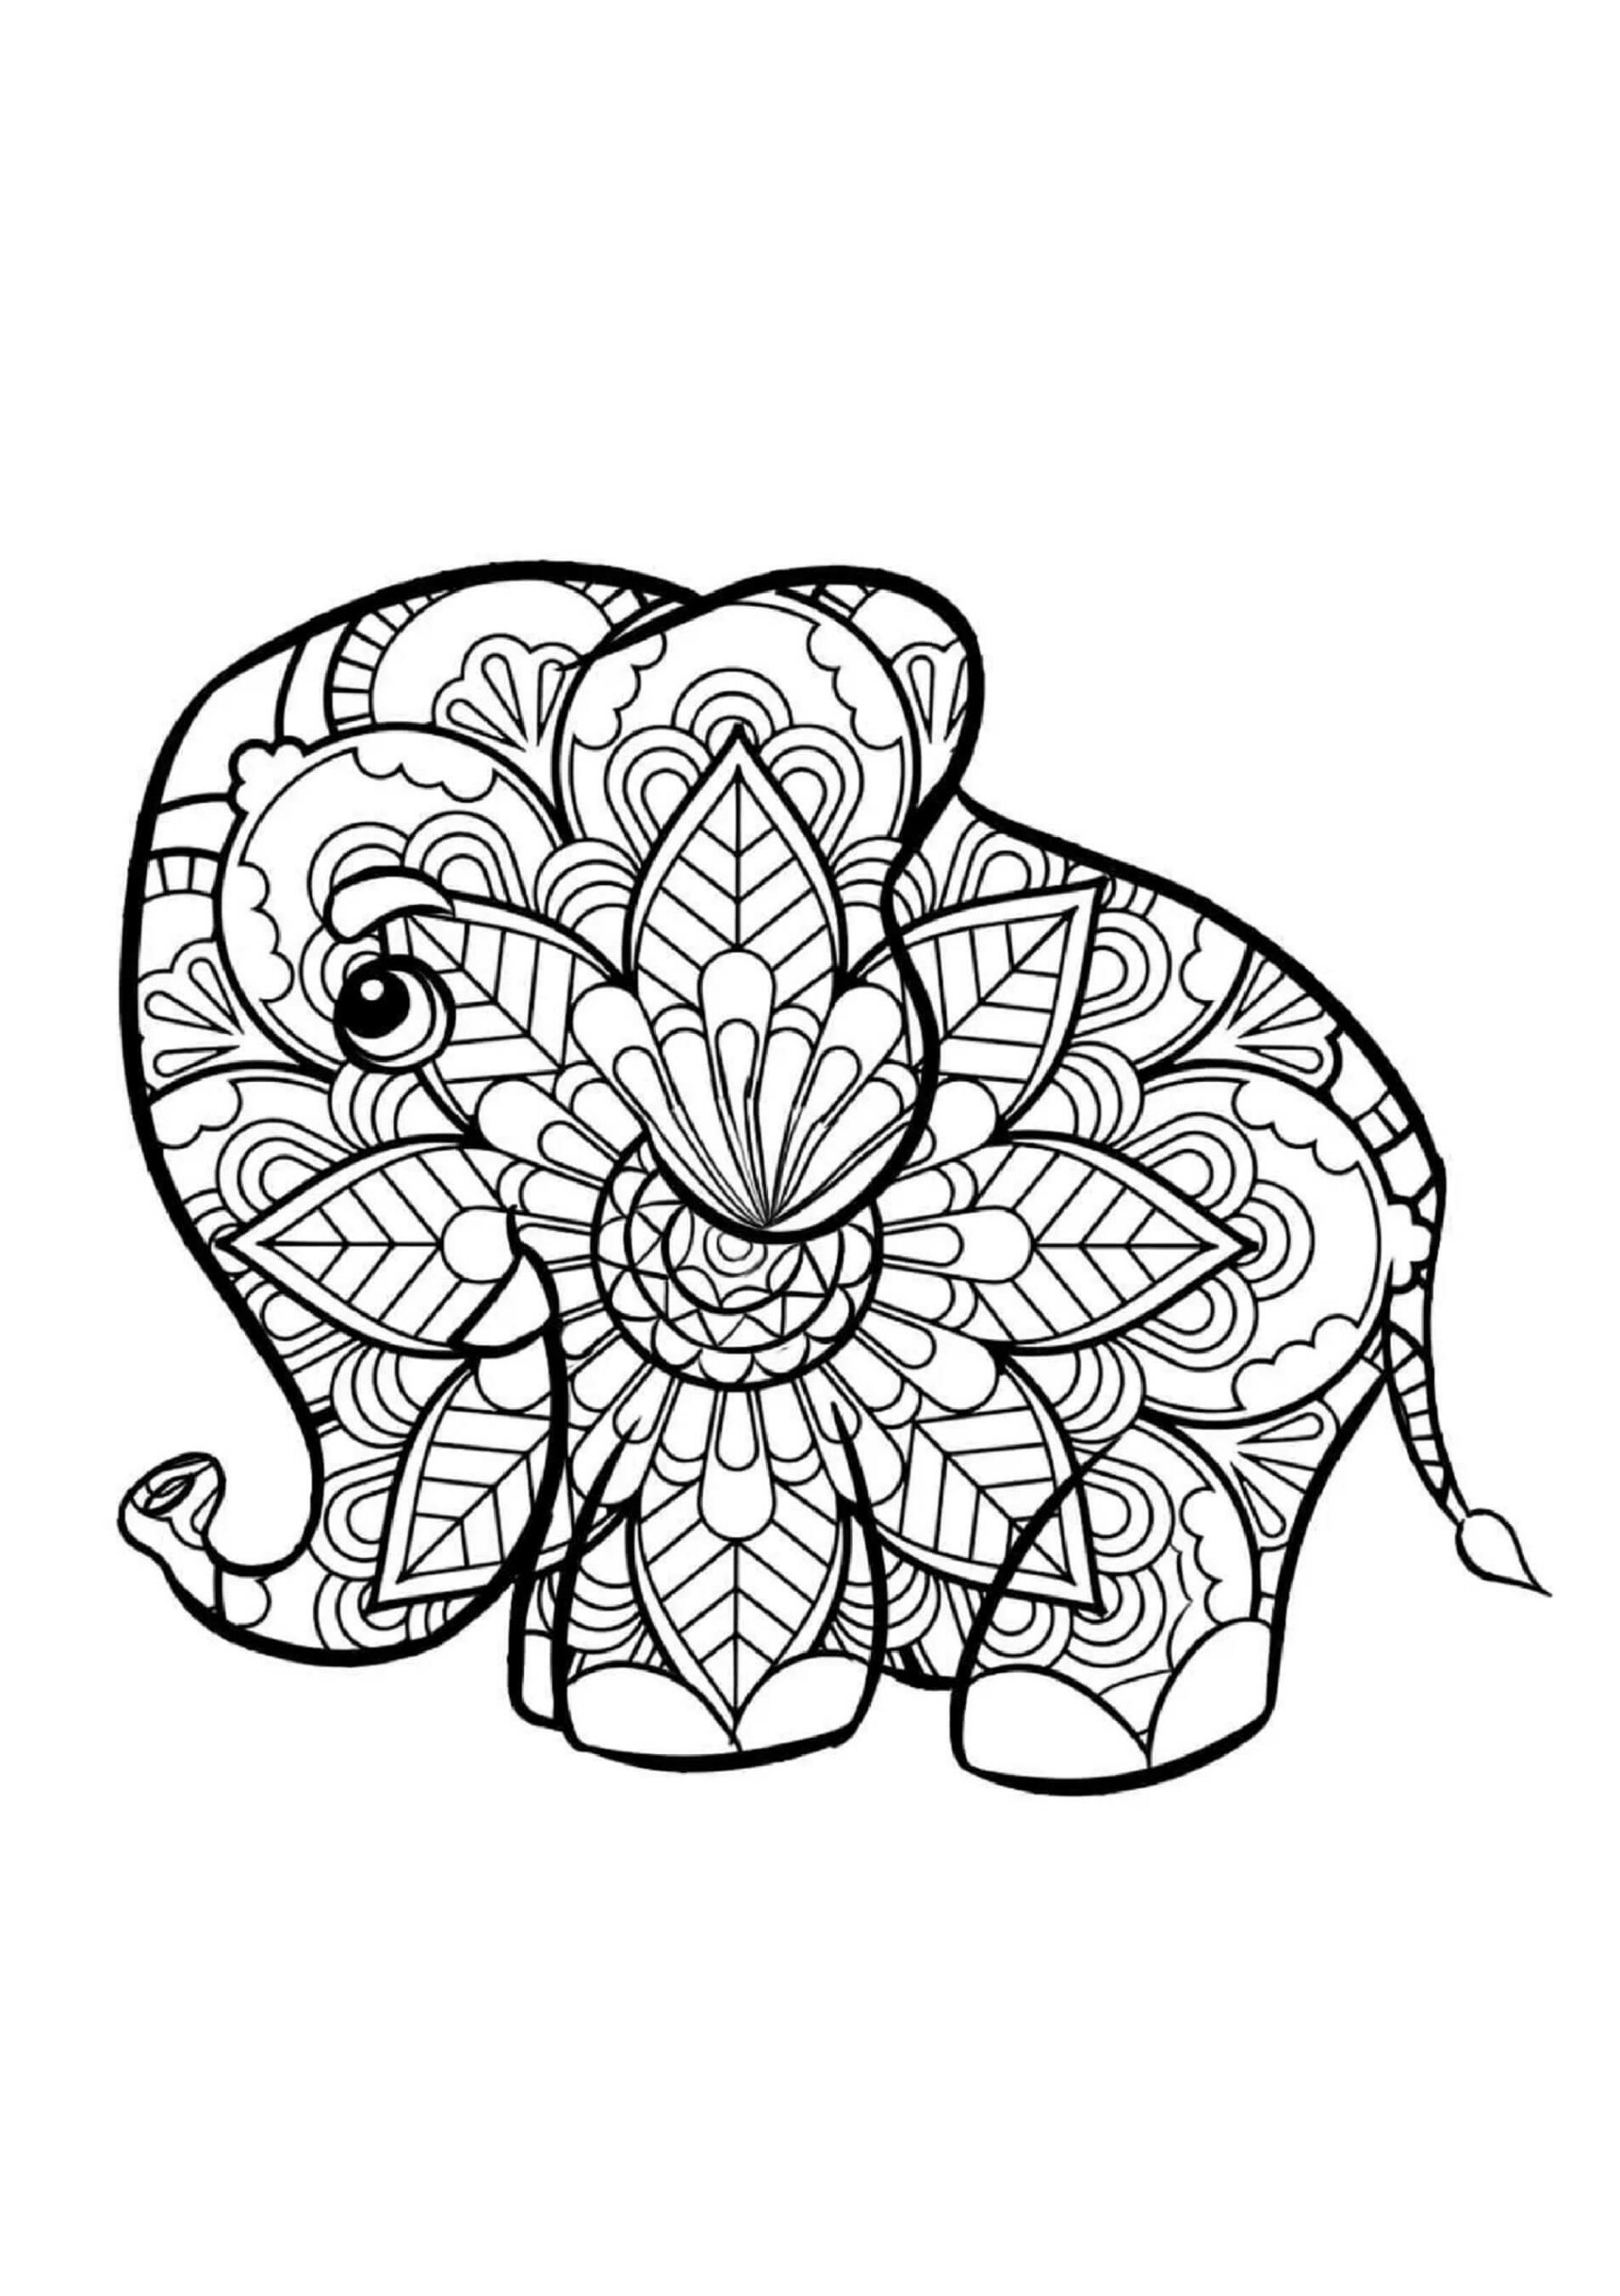 Mandala Little Elephant Coloring Page Mandalas